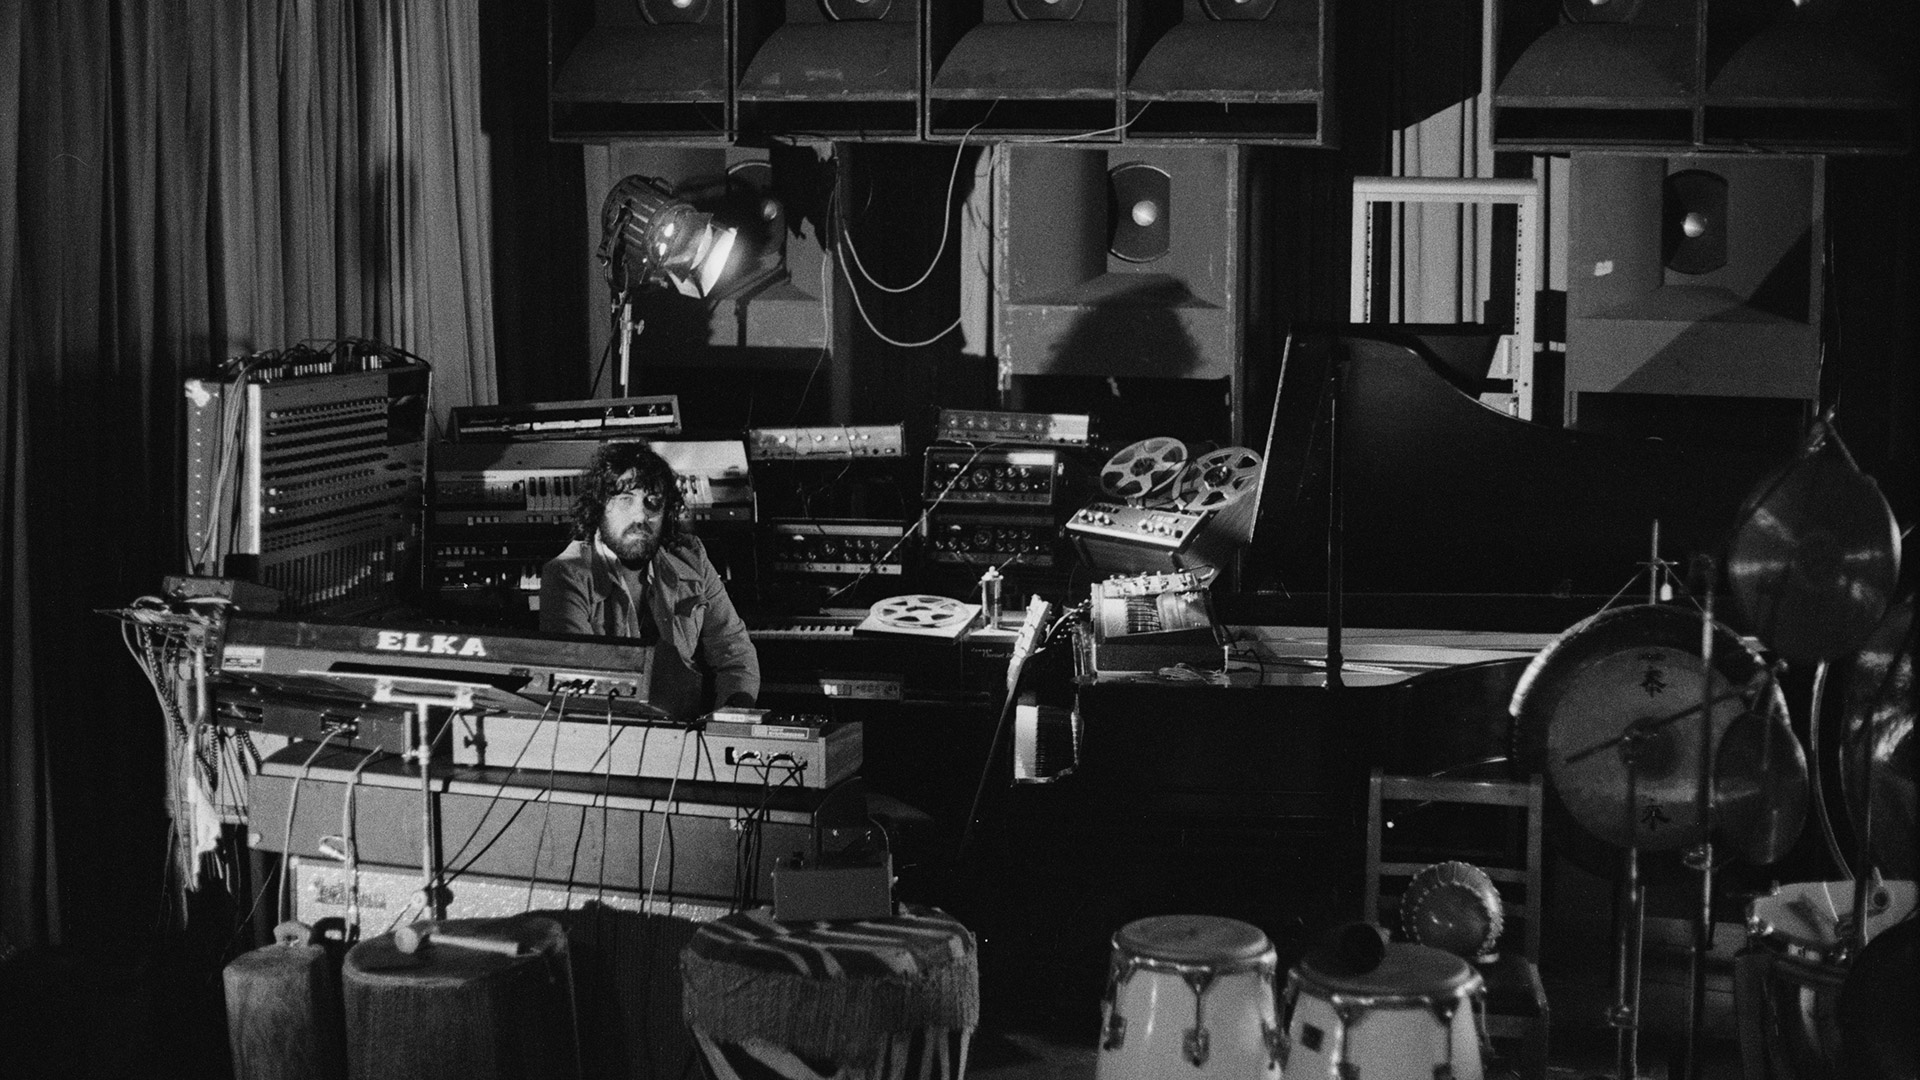 El compositor griego de música electrónica, Vangelis, rodeado de equipos en un lugar, el 28 de enero de 1976 (Photo by Michael Putland/Getty Images)